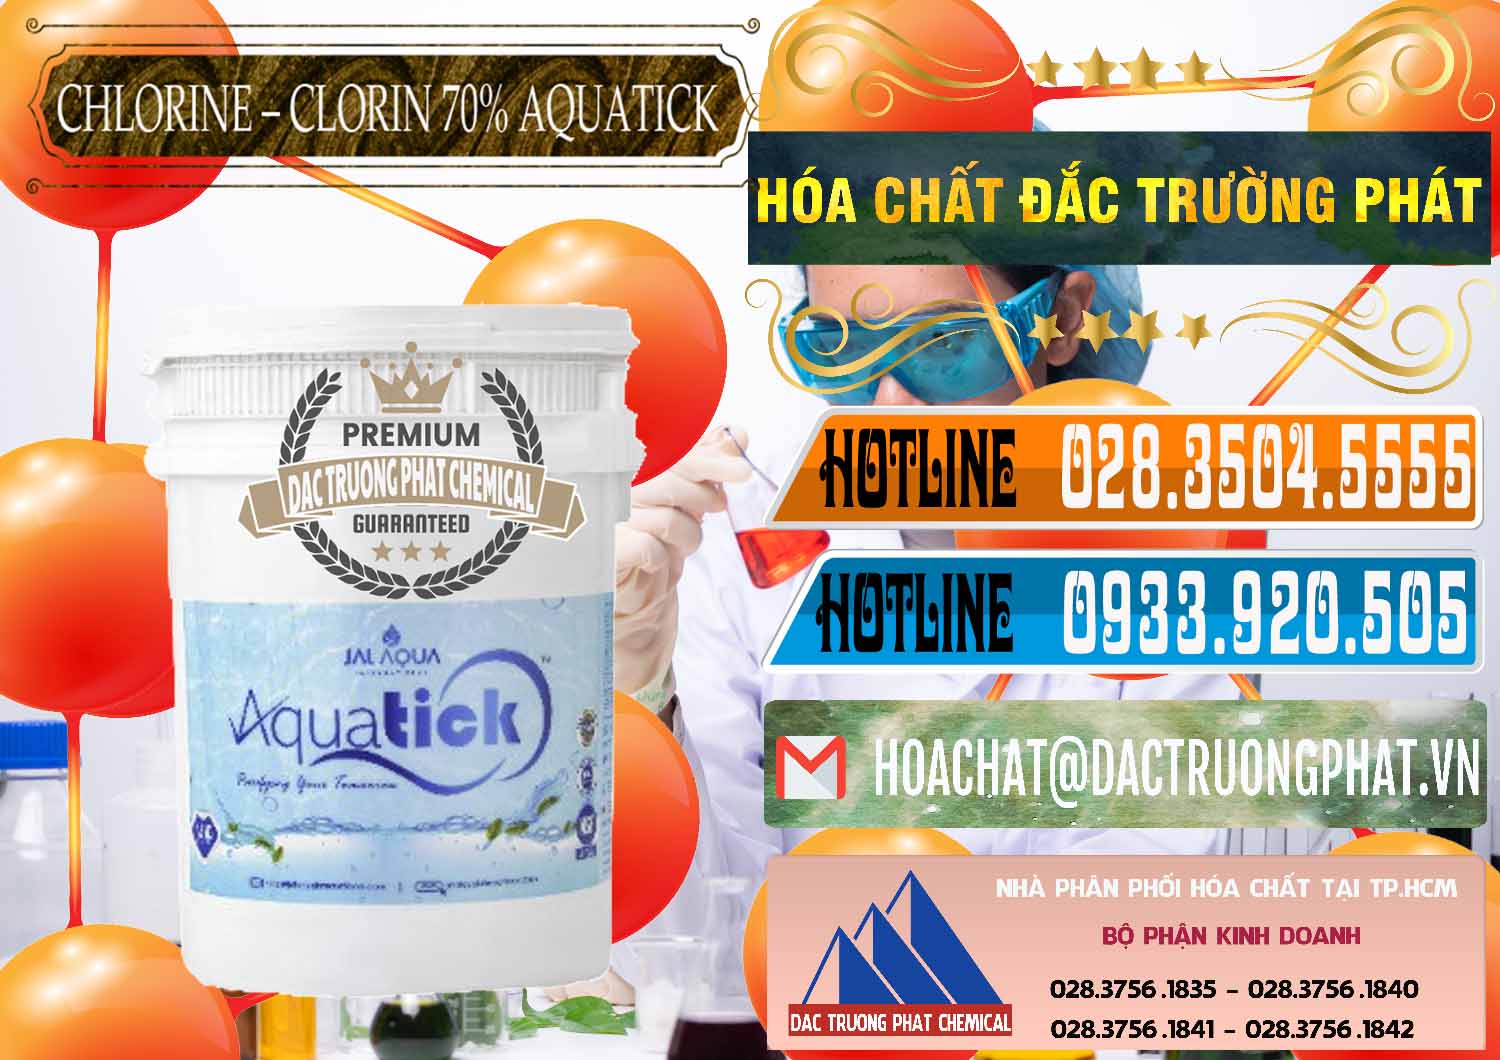 Cty bán & cung cấp Chlorine – Clorin 70% Aquatick Thùng Cao Jal Aqua Ấn Độ India - 0237 - Chuyên bán & cung cấp hóa chất tại TP.HCM - stmp.net